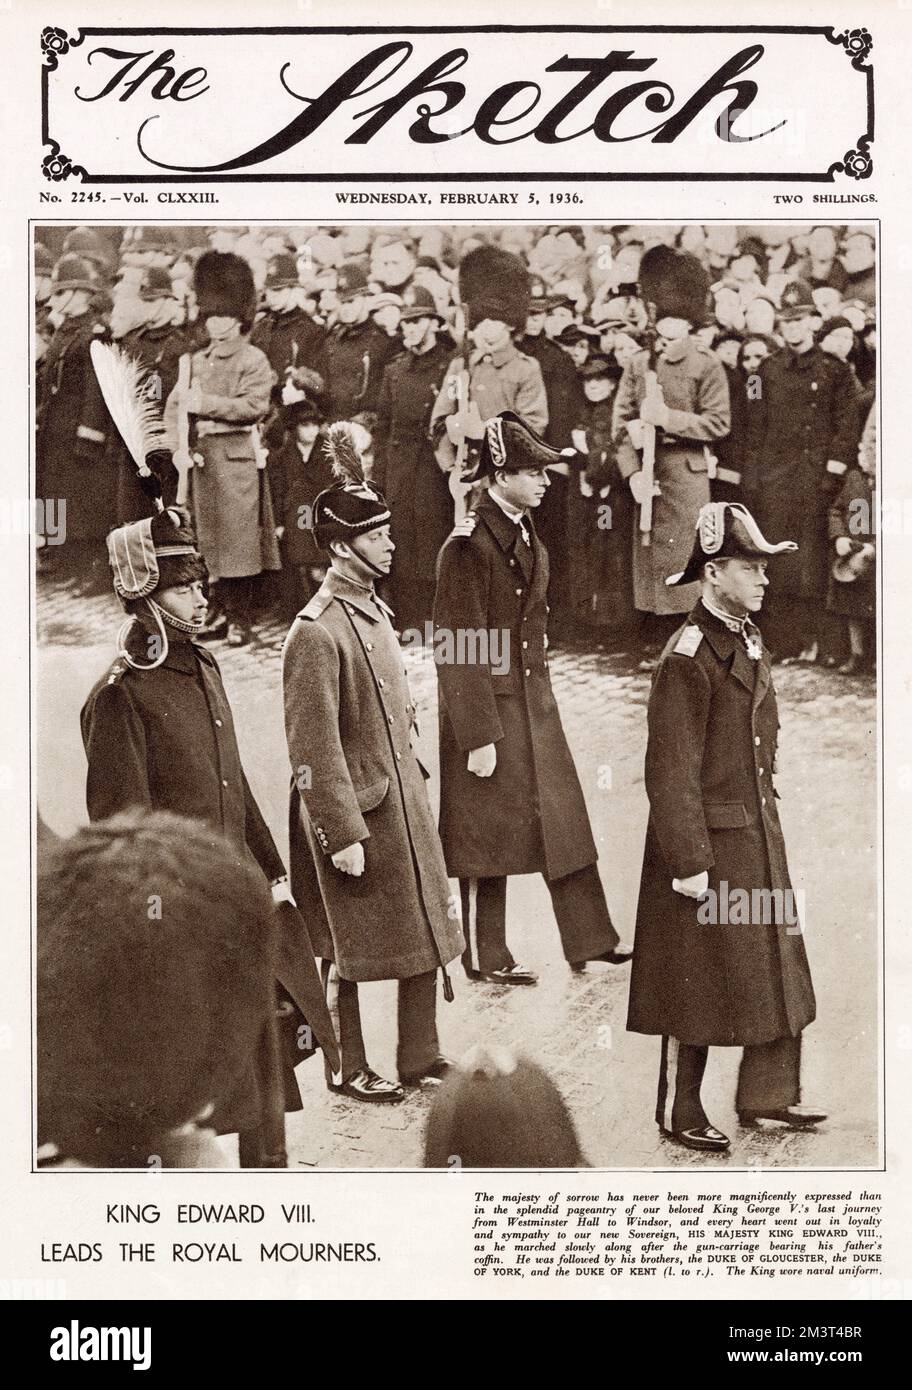 Couverture avant de l'esquisse couvrant les funérailles du roi George V. la photographie montre le roi Edward VIII, menant les coursiers royaux marchant après la charriot portant le corps du roi George tardif. Derrière lui se trouvent, de gauche à droite, le duc de Gloucester, le duc de York (roi George VI) et le duc de Kent. Banque D'Images